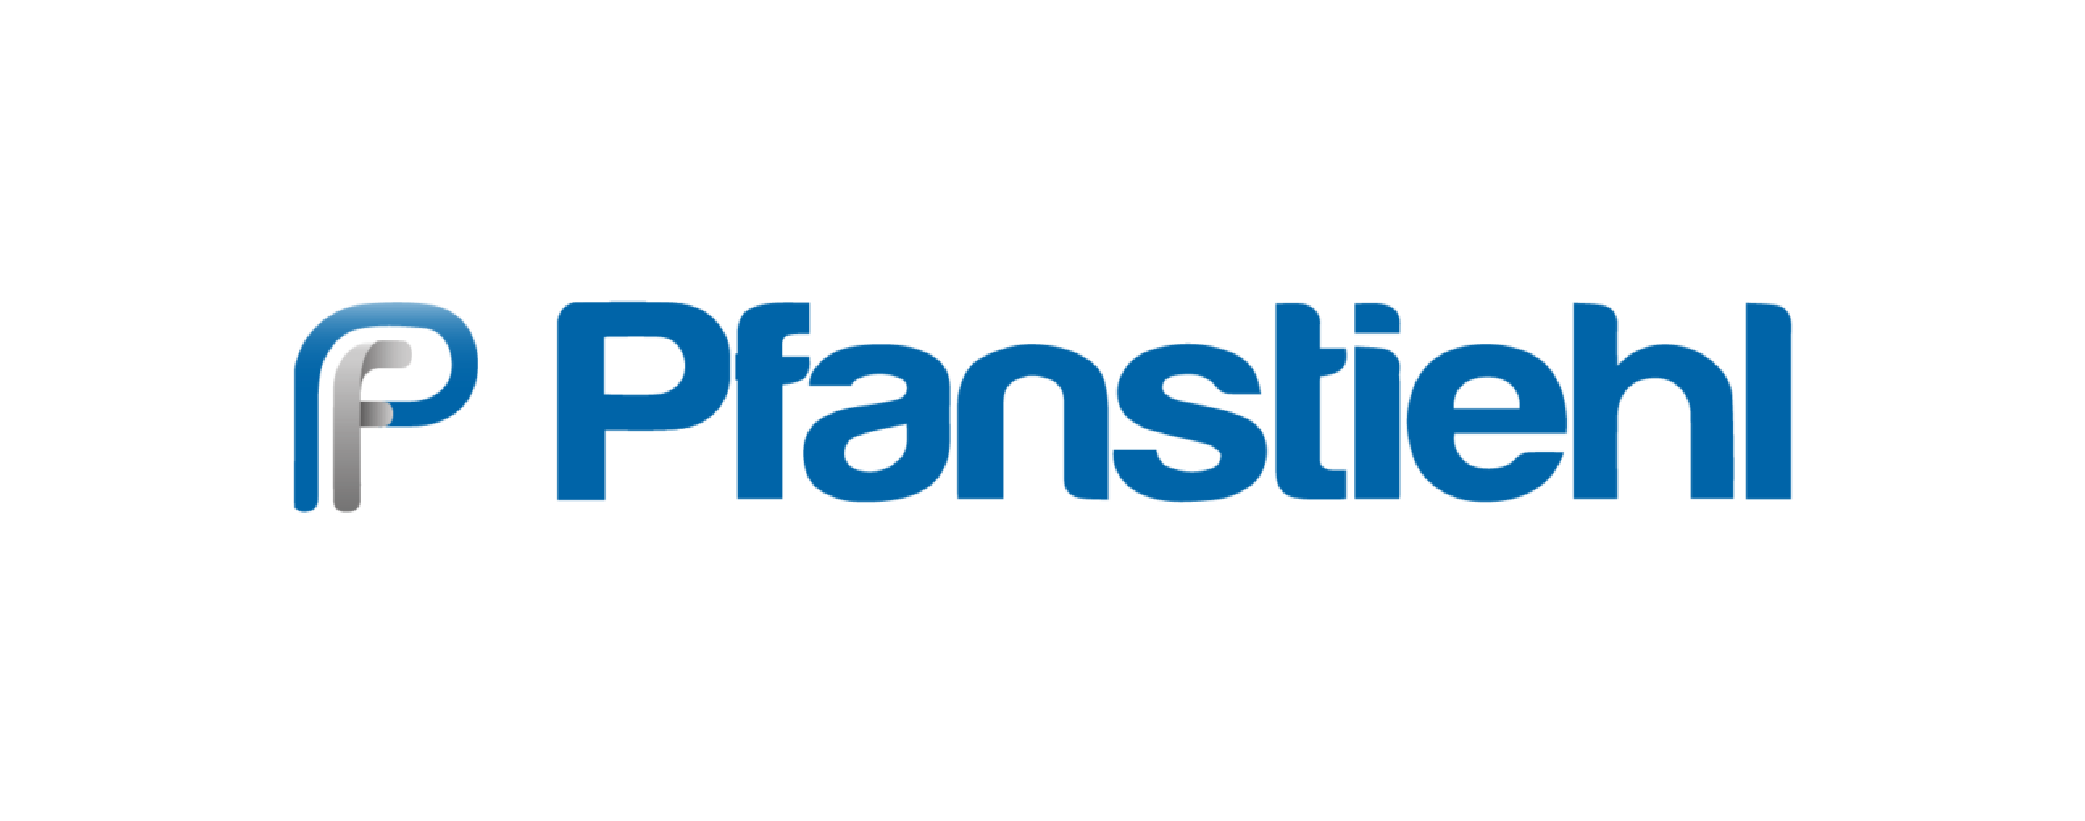 logo_pfanstiehl-01